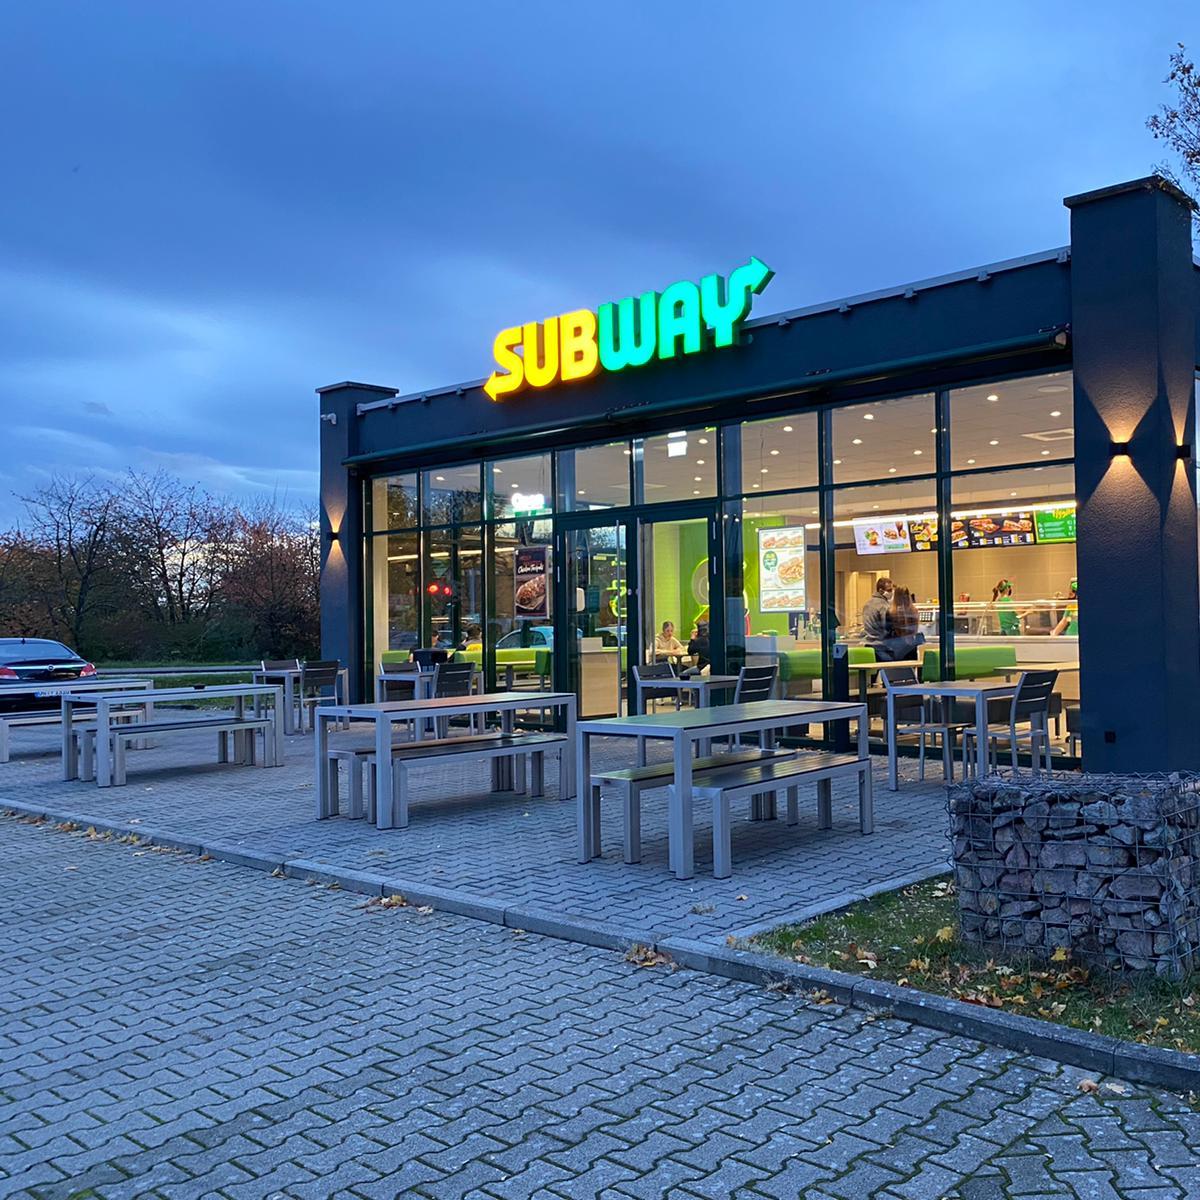 Restaurant "Subway" in Offenburg